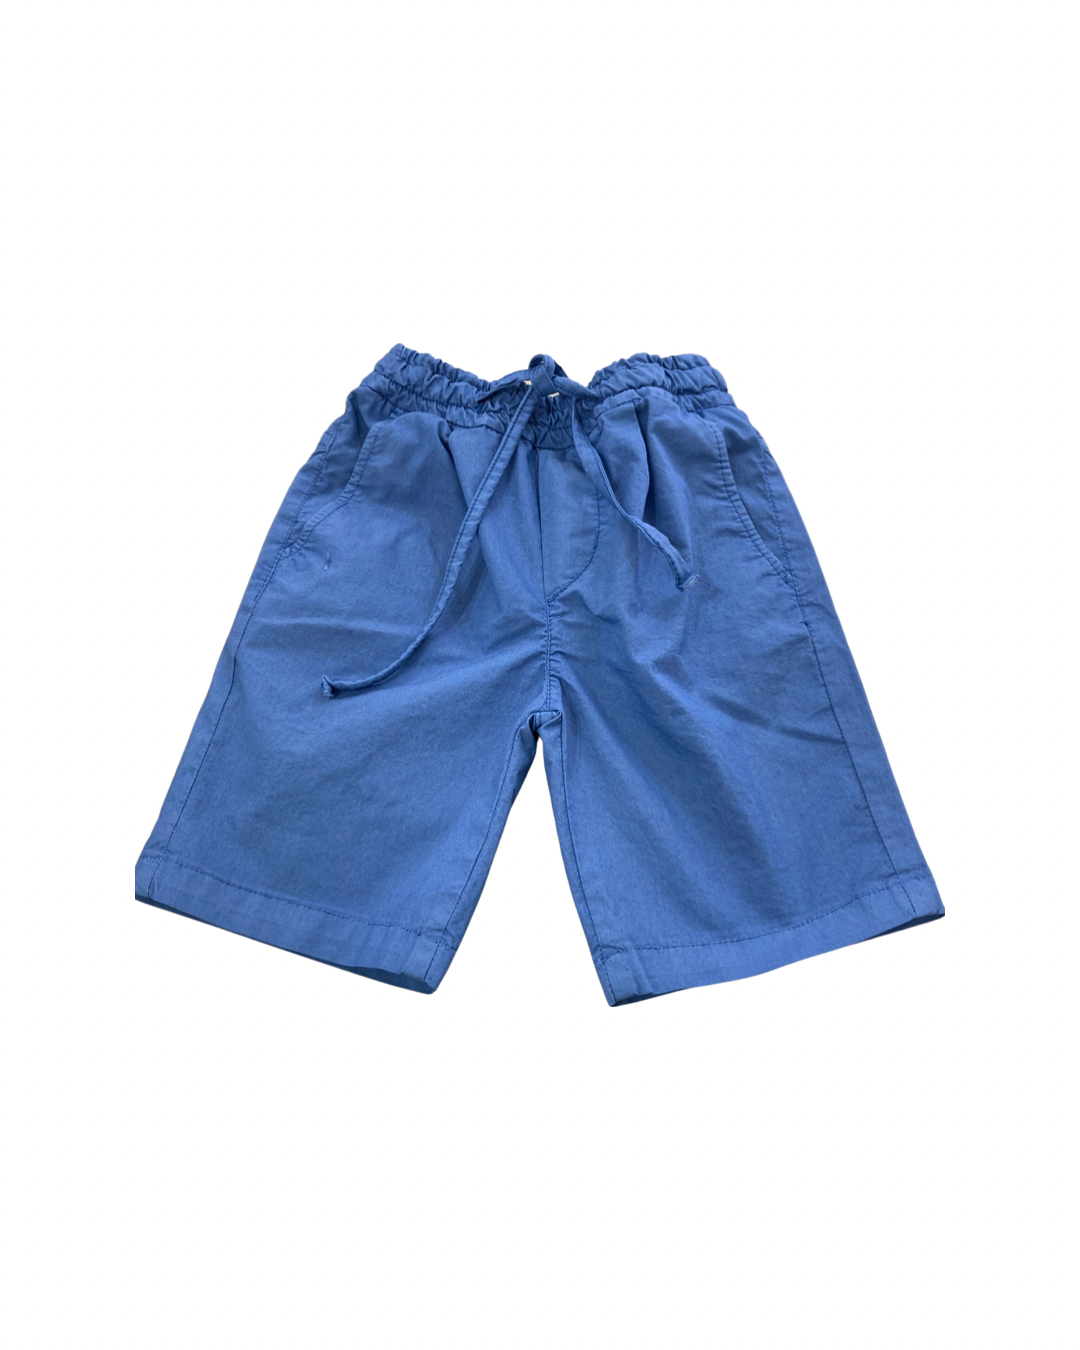 Pantalone , Pantalone corto slavato per Bambino da 3anni a 7anni Y-Clu BYB9322 - BabyBimbo 0-16, abbigliamento bambini